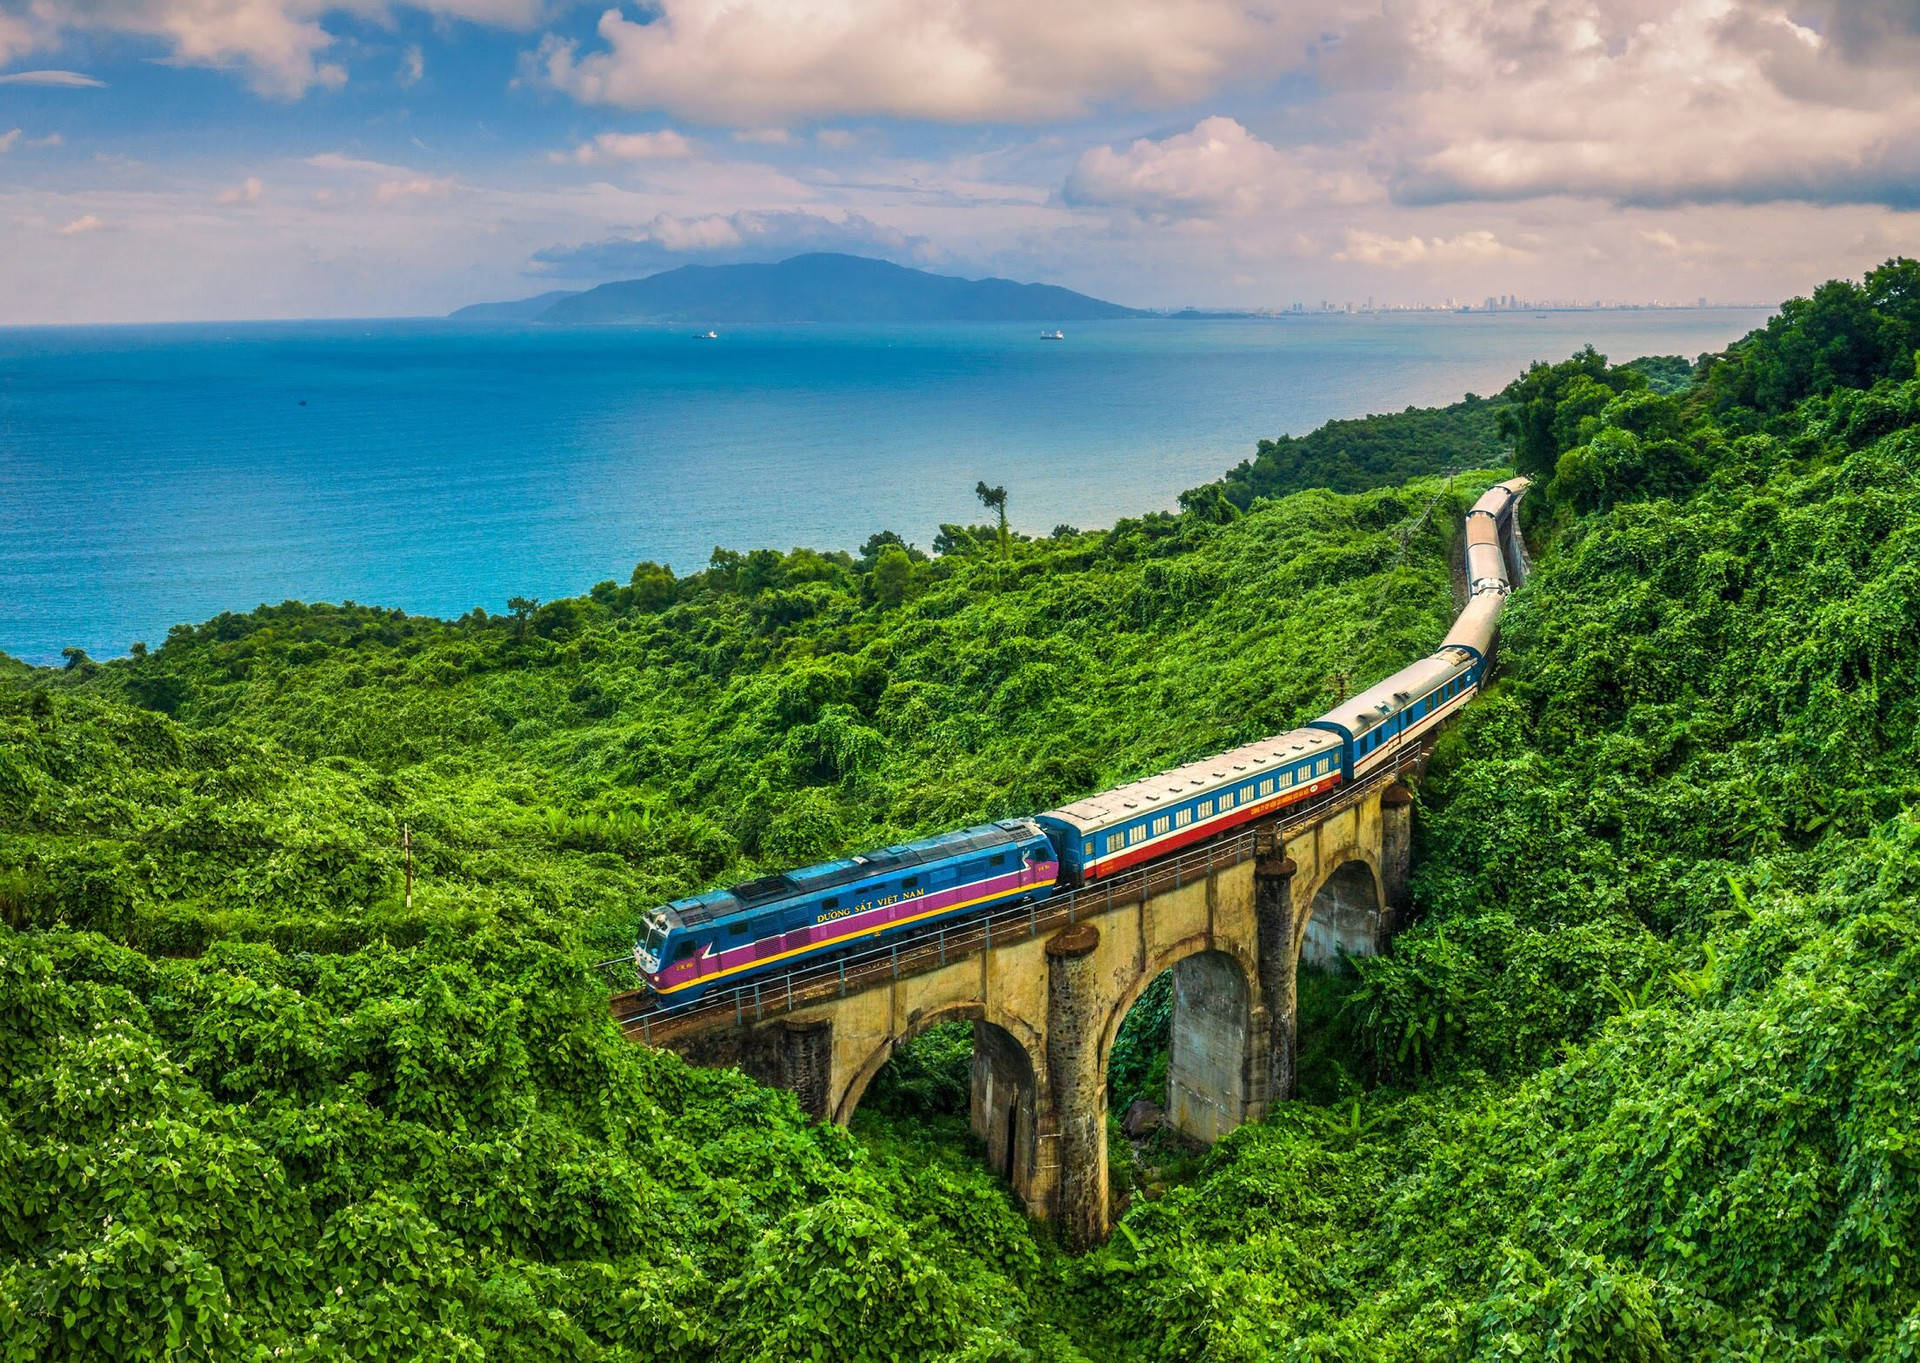 Cơ cấu lại Tổng công ty Đường sắt Việt Nam